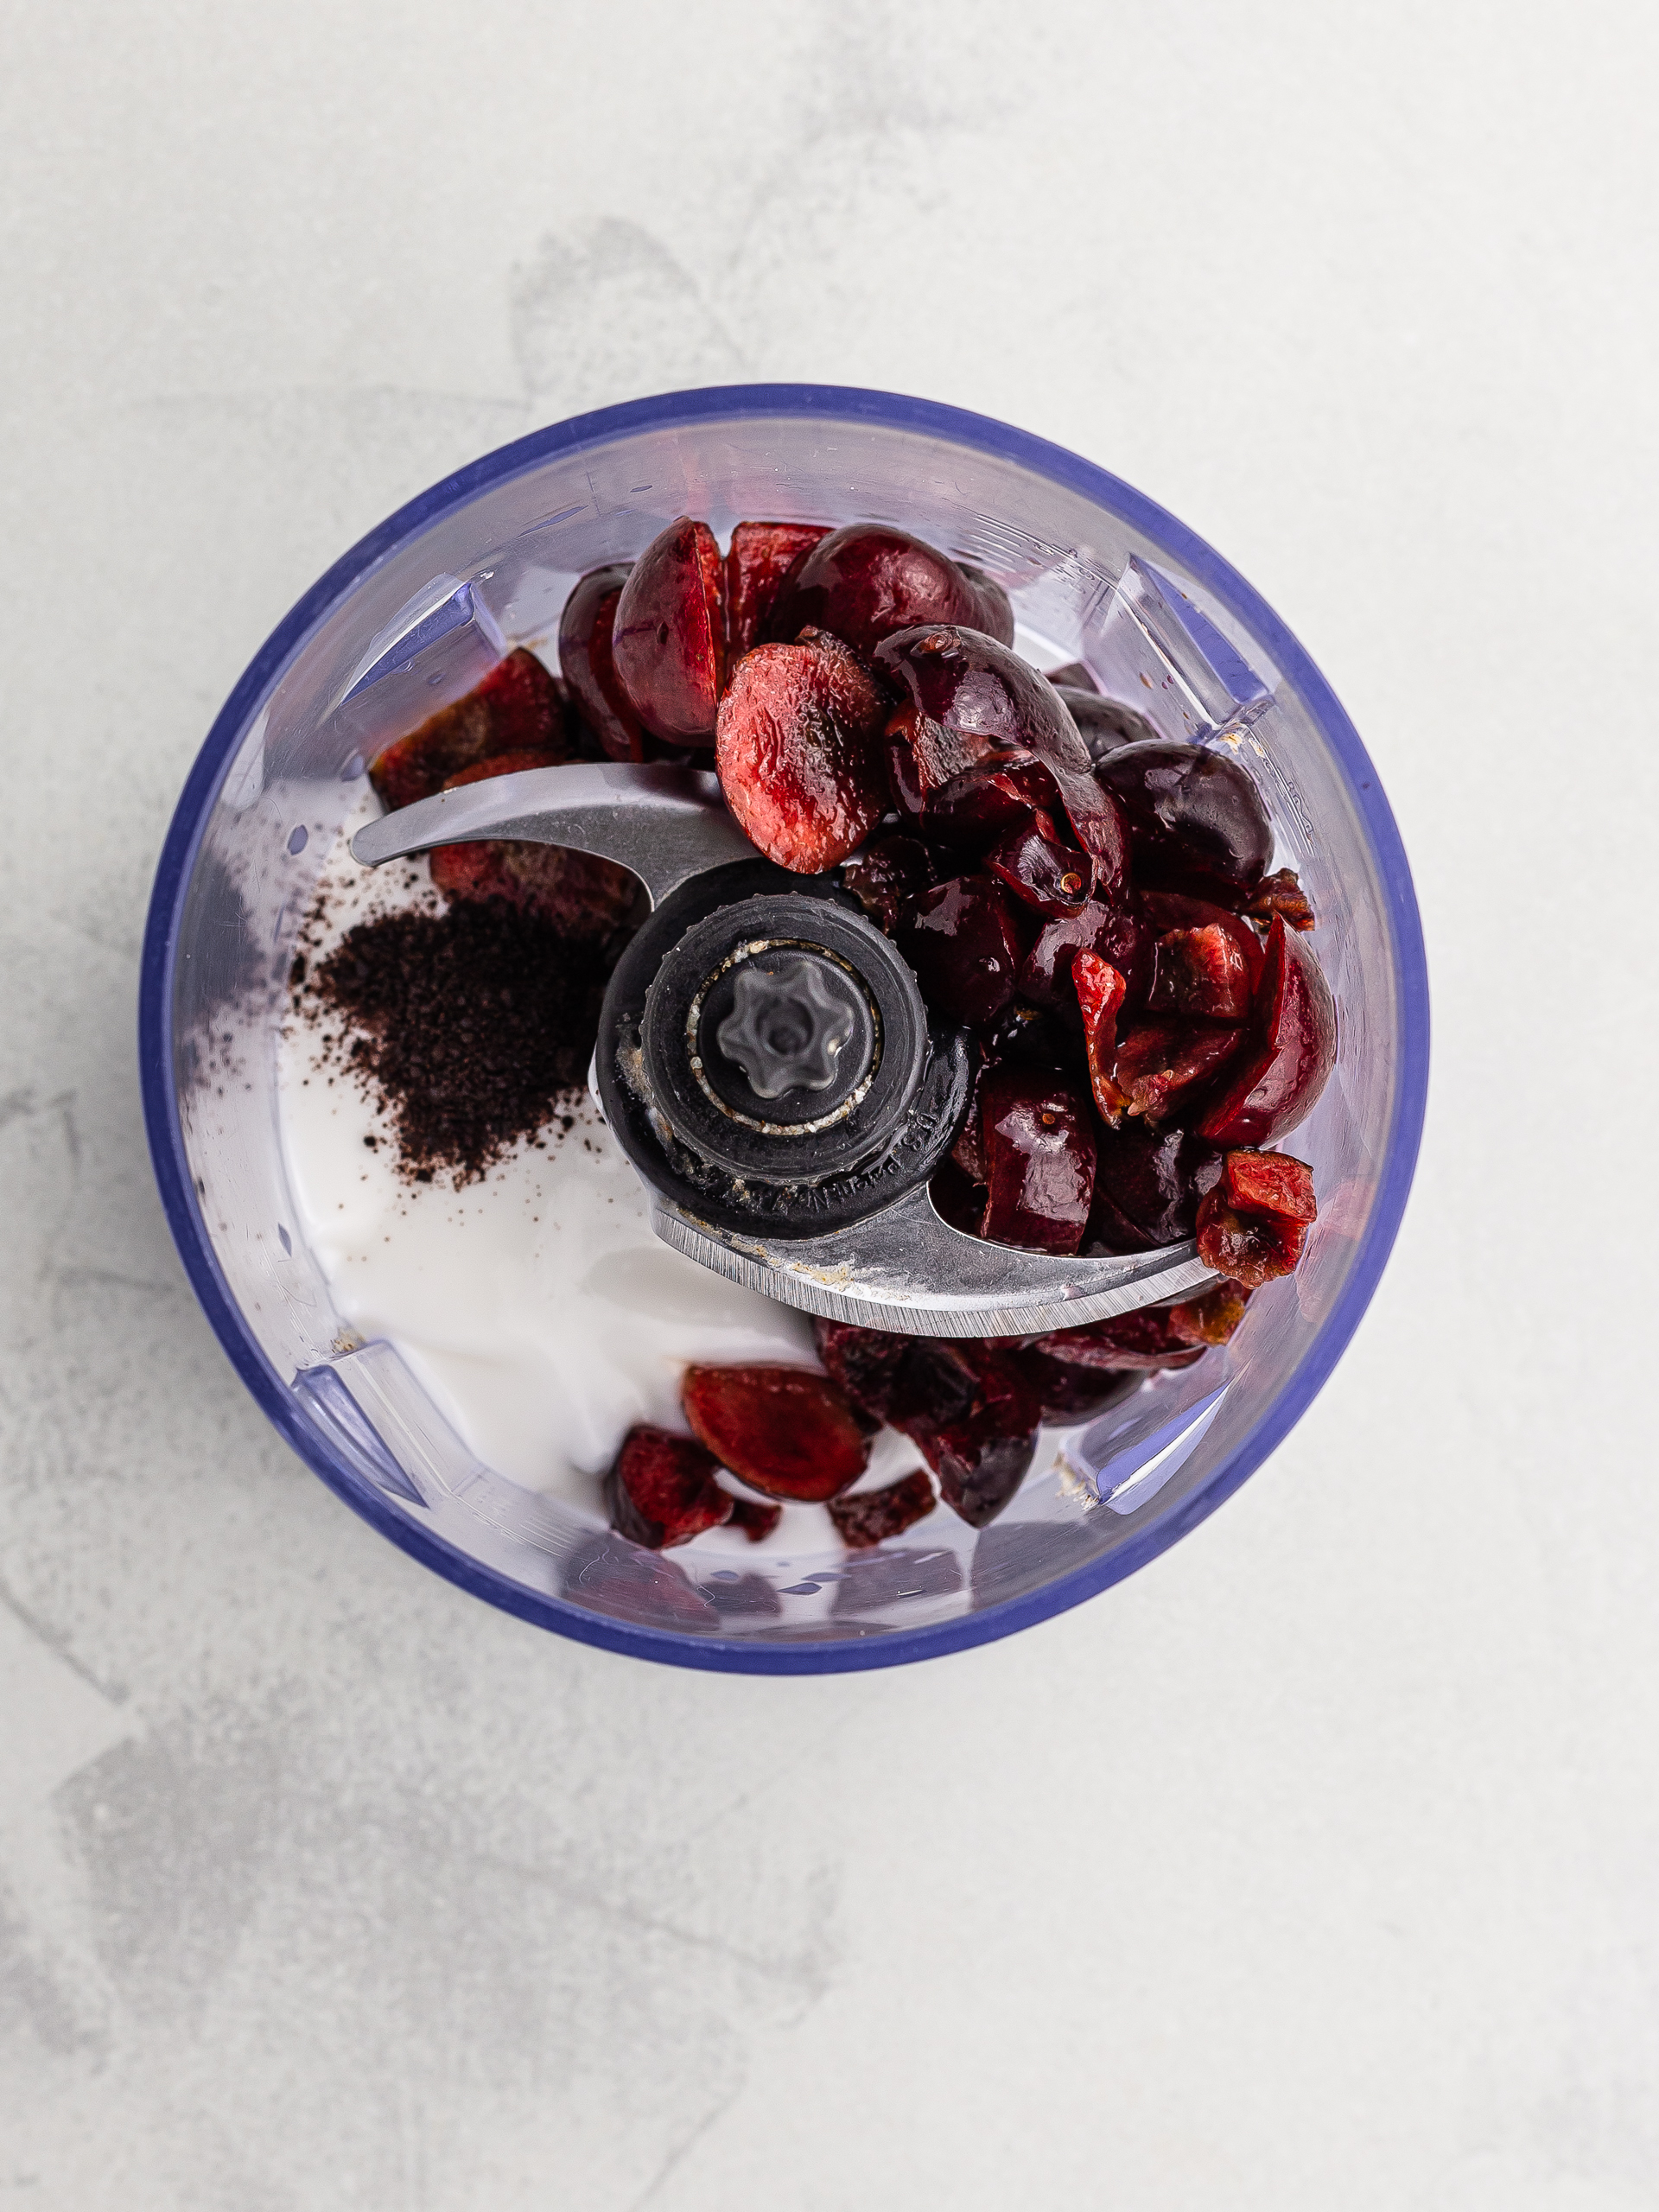 cherries with yogurt and acai